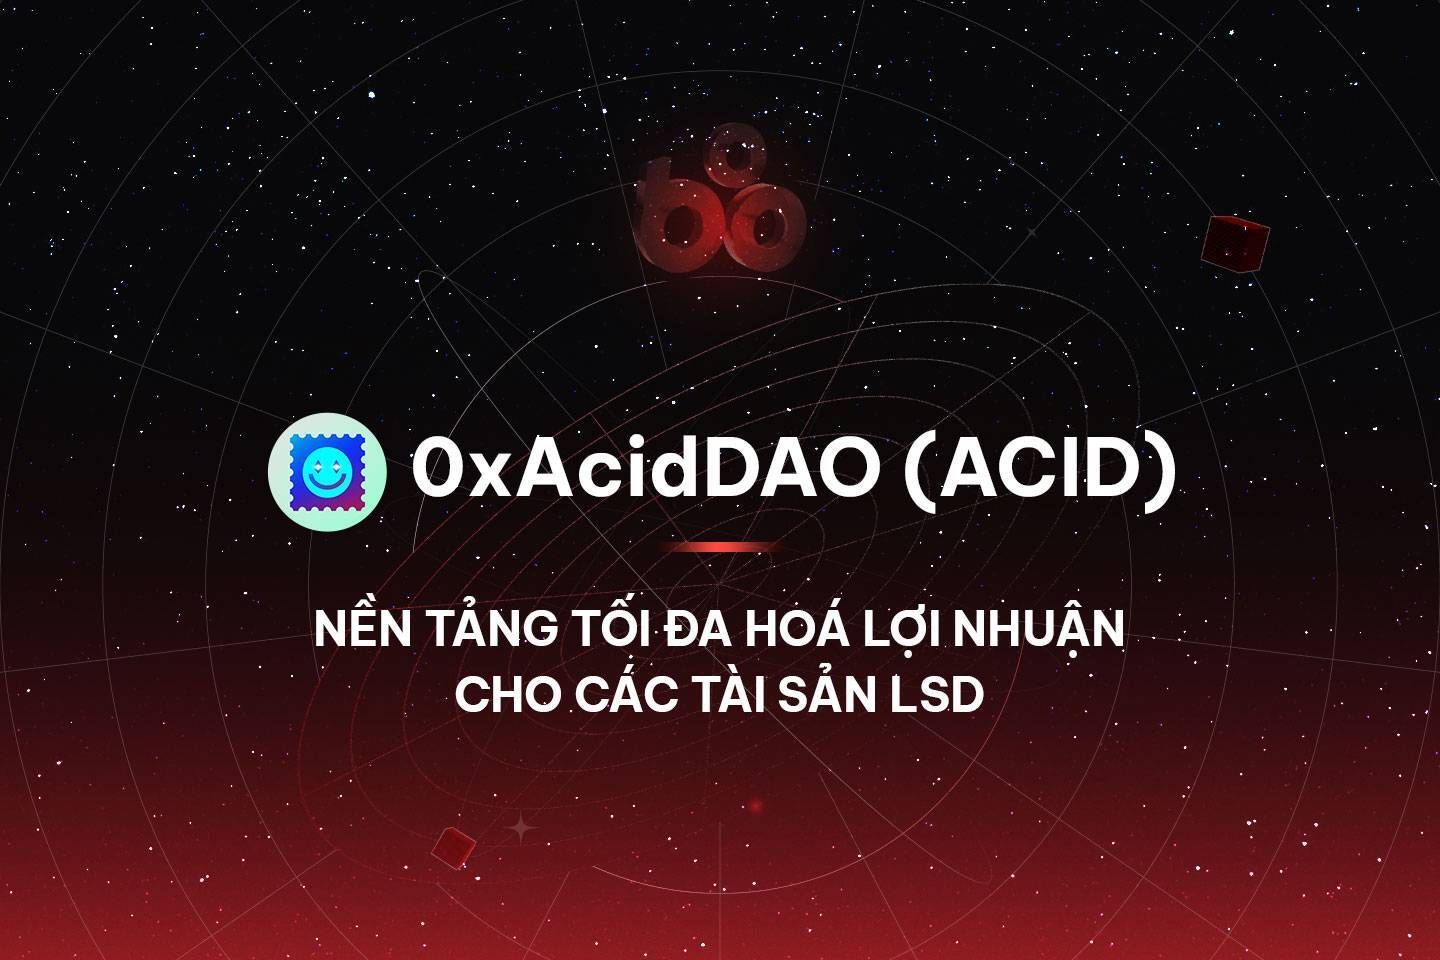 0xaciddao acid - Nền Tảng Tối Đa Hoá Lợi Nhuận Cho Các Tài Sản Lsd